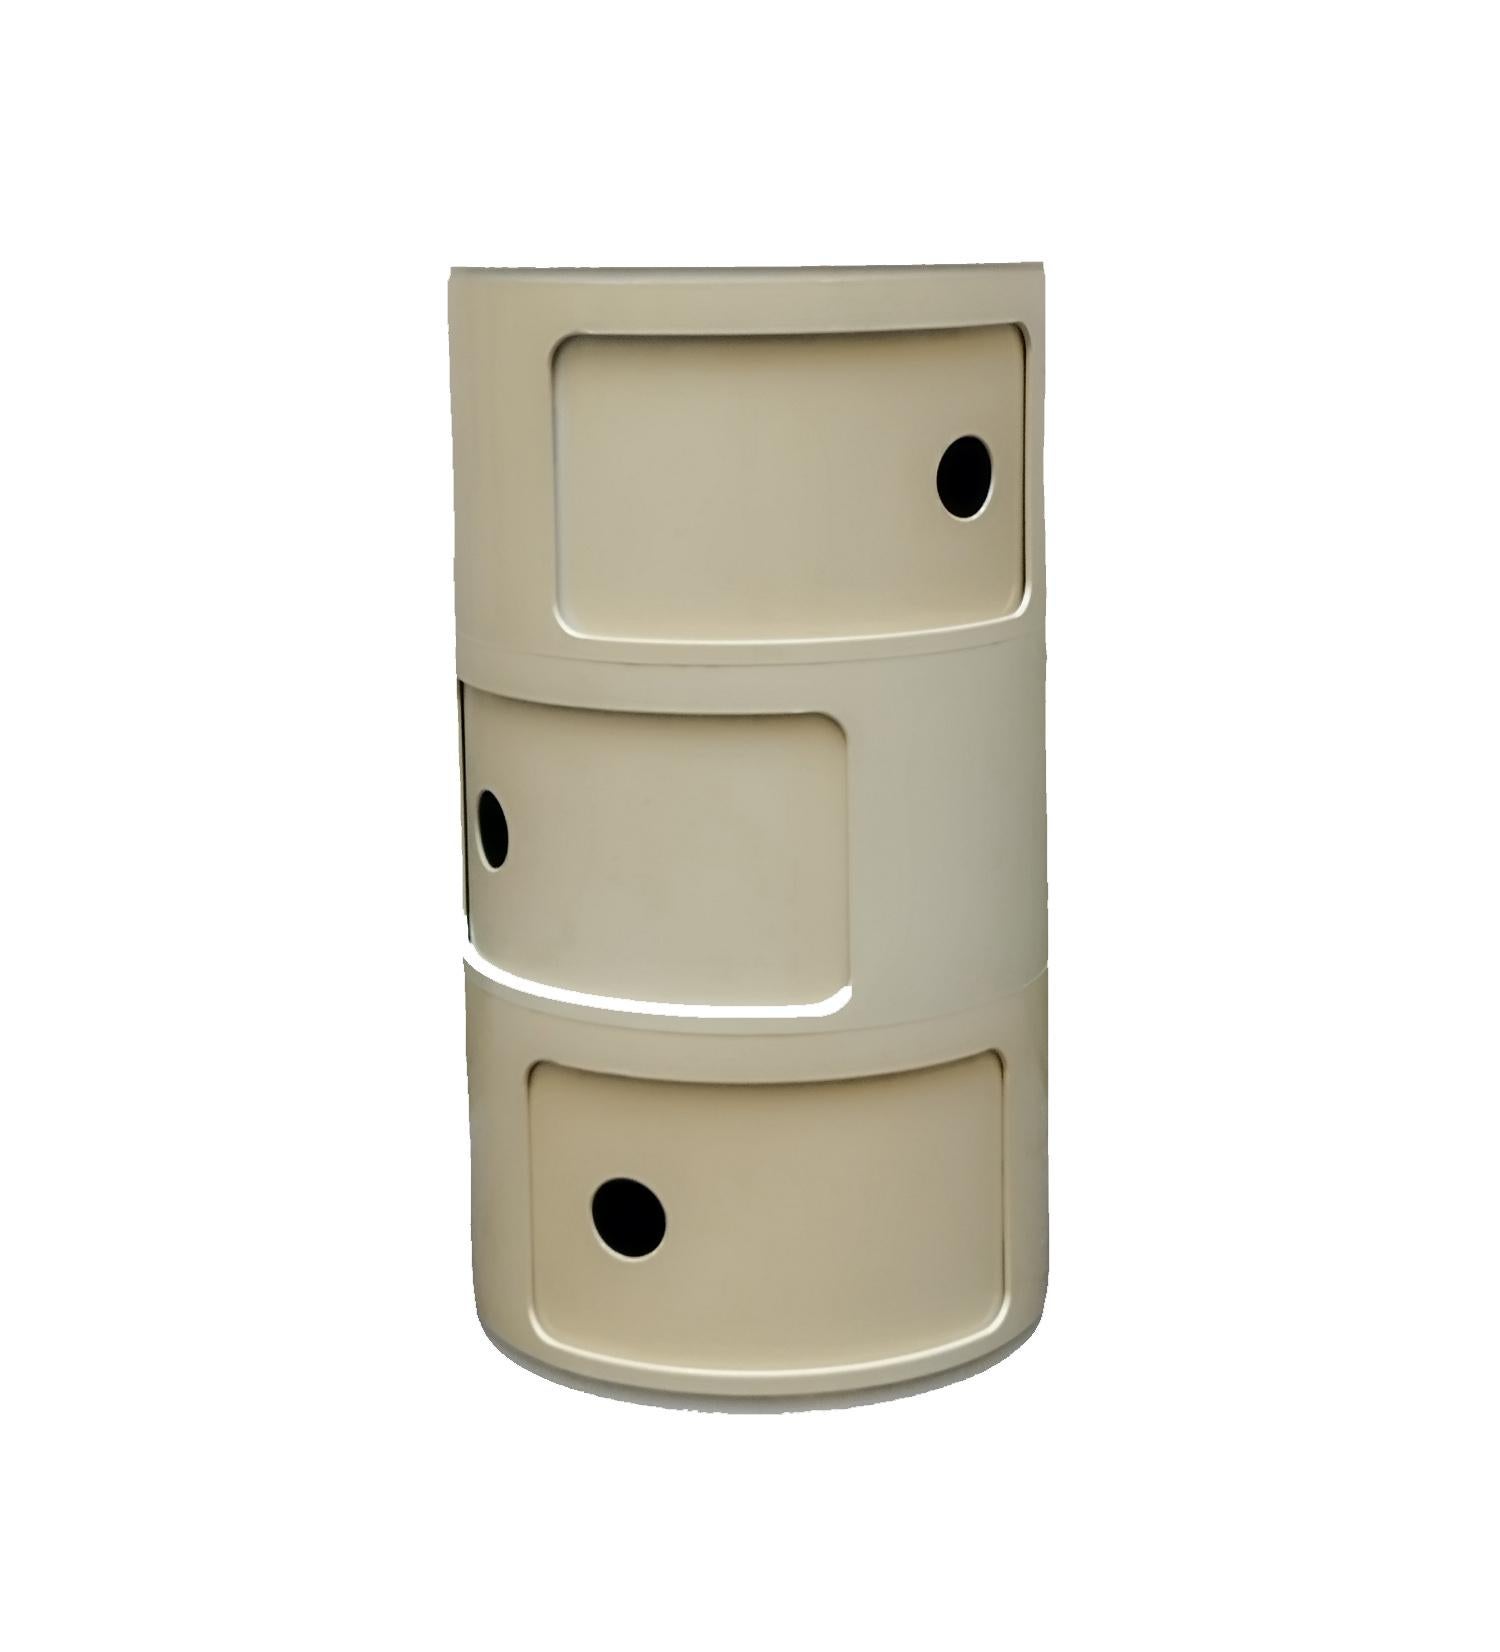 Componibili Klassische runde, modulare Aufbewahrungseinheit, entworfen von Anna Castelli Ferrieri für Kartell im Jahr 1970.
Componibili Schrank / 3 Schubladen Elfenbein entworfen von Anna Castelli Ferrieri für Kartell.
Modularer Container mit